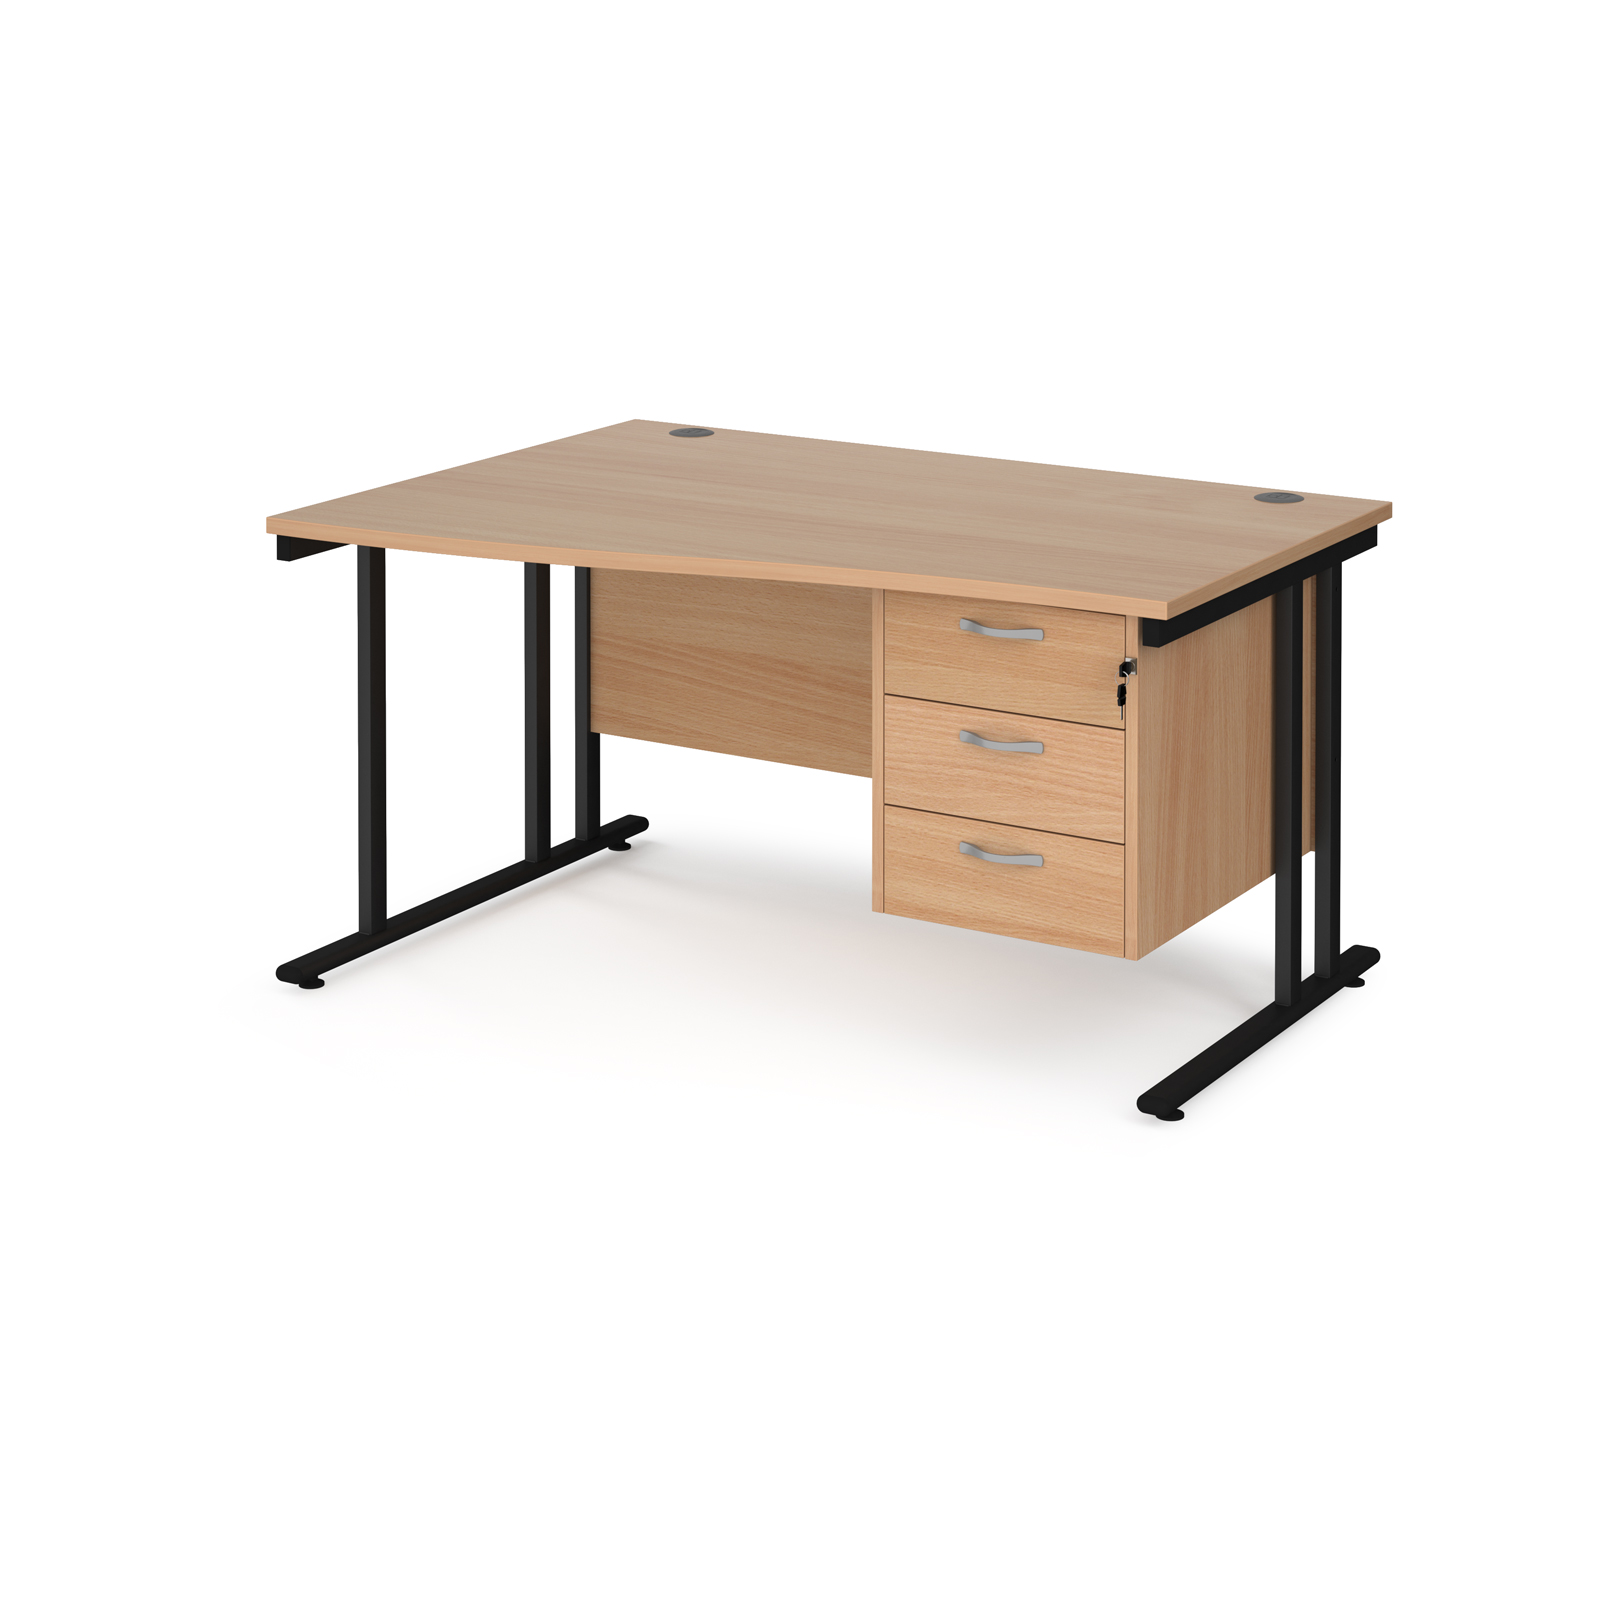 Maestro 25 left hand wave desk 1400mm wide with 3 drawer pedestal - black cantilever leg frame, beech top